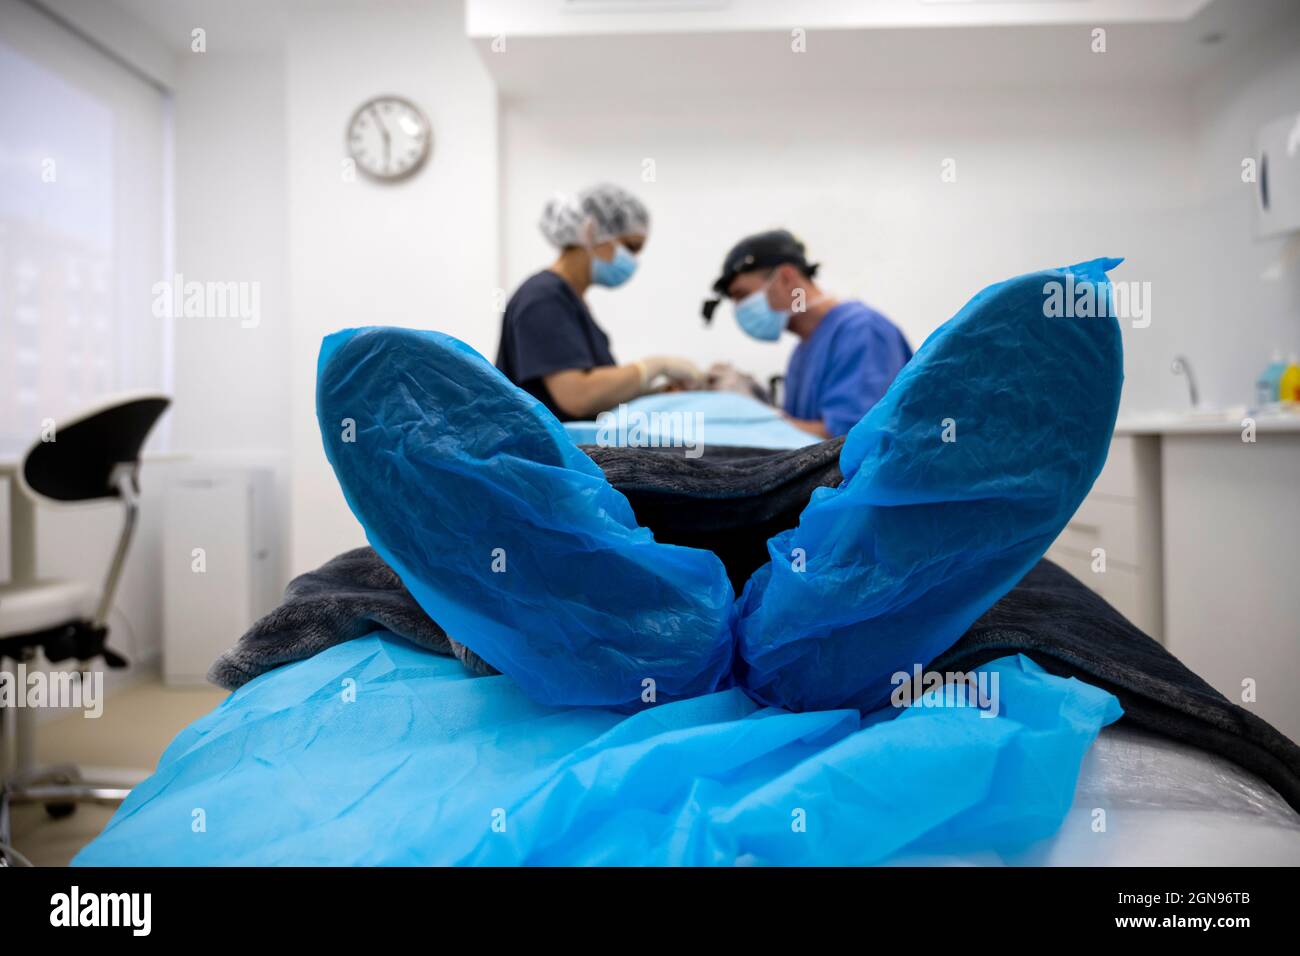 Le chirurgien suture la paupière après une opération de chirurgie plastique Banque D'Images